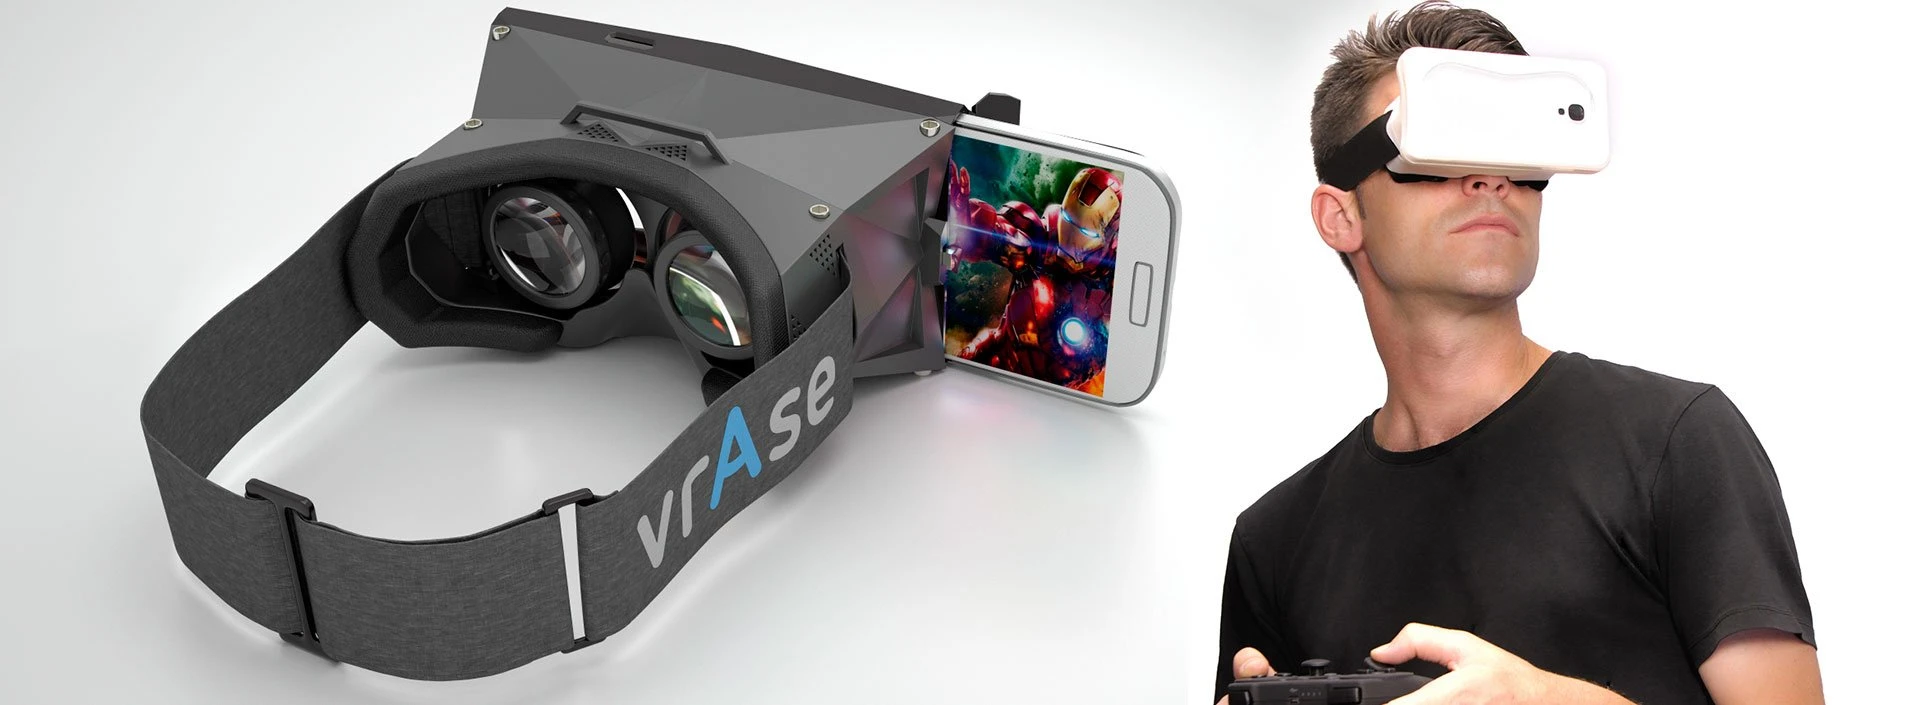 スマホに装着するだけで3D映画が楽しめる次世代デバイス「vrAse」